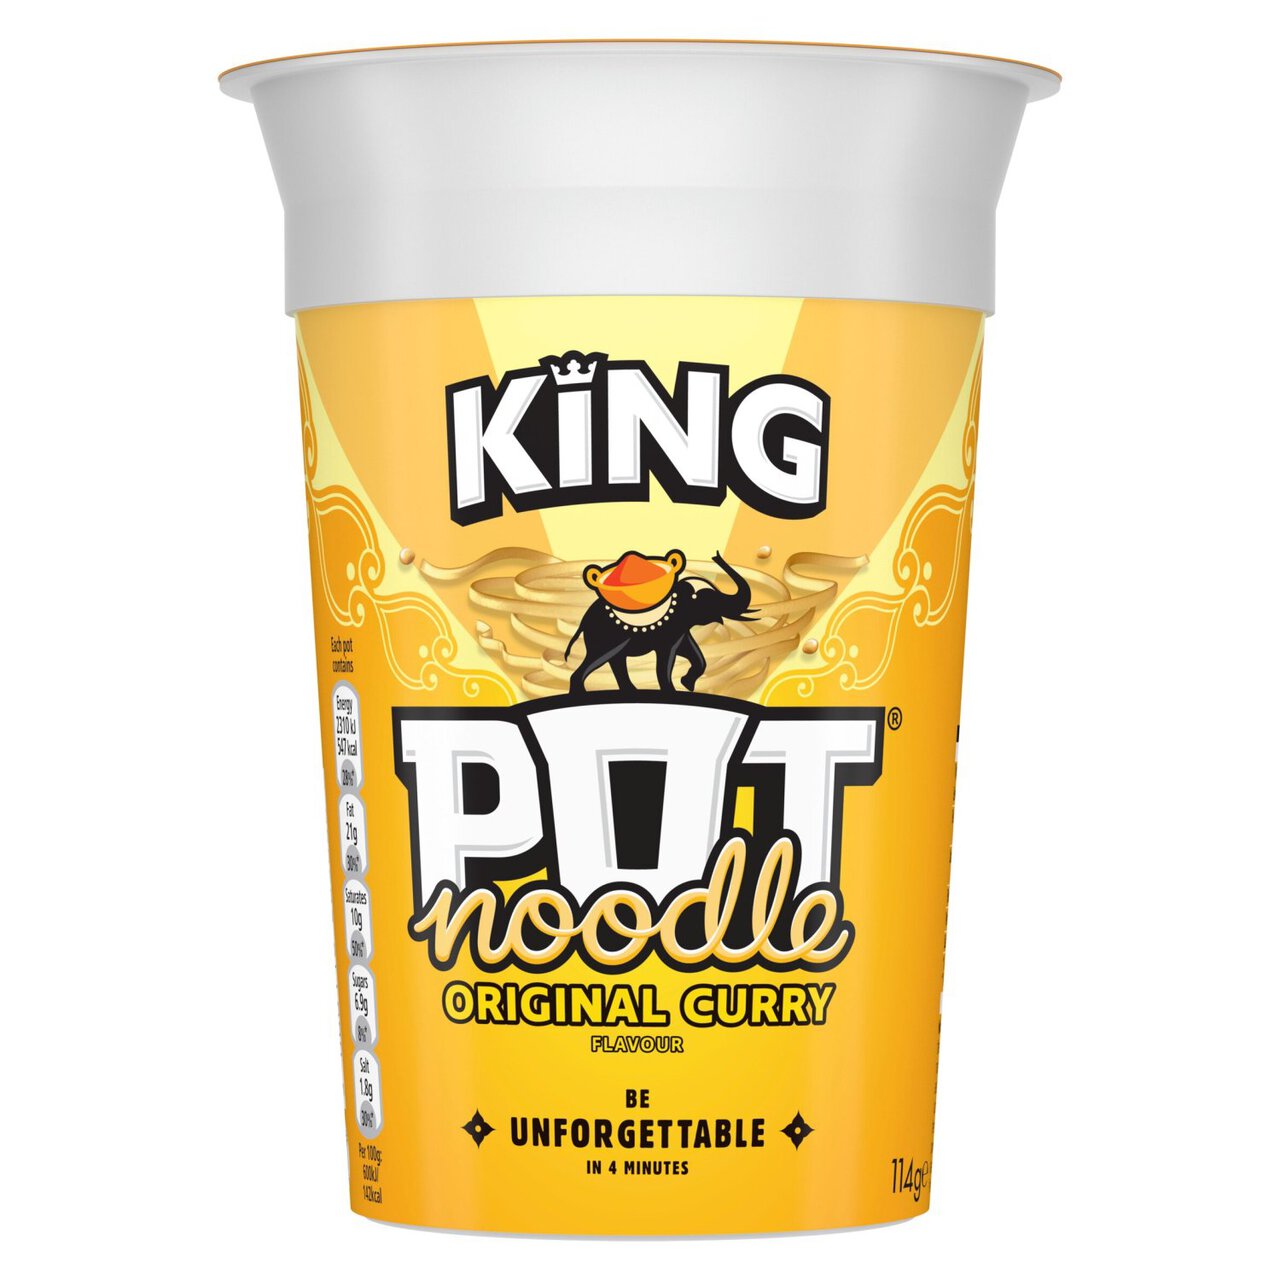 Pot Noodle King Original Curry 114g